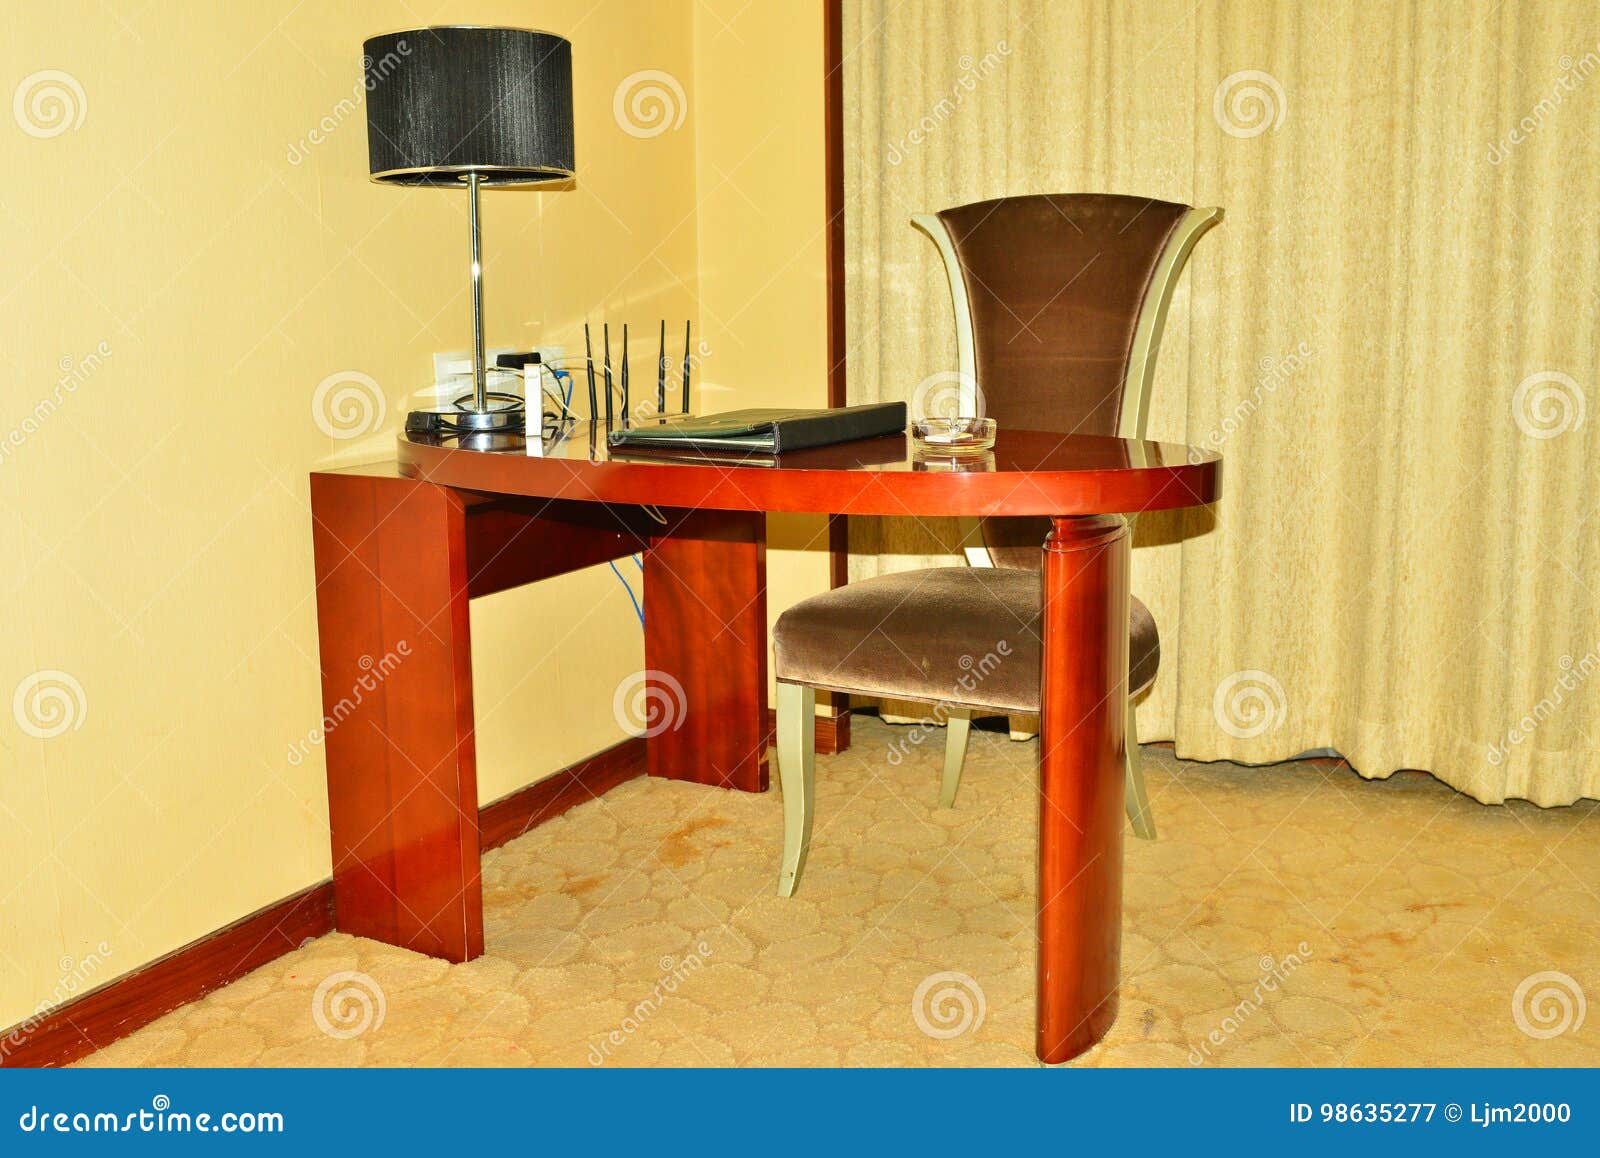 Neat Desk Stock Image Image Of Model Image Sofa Horizontal